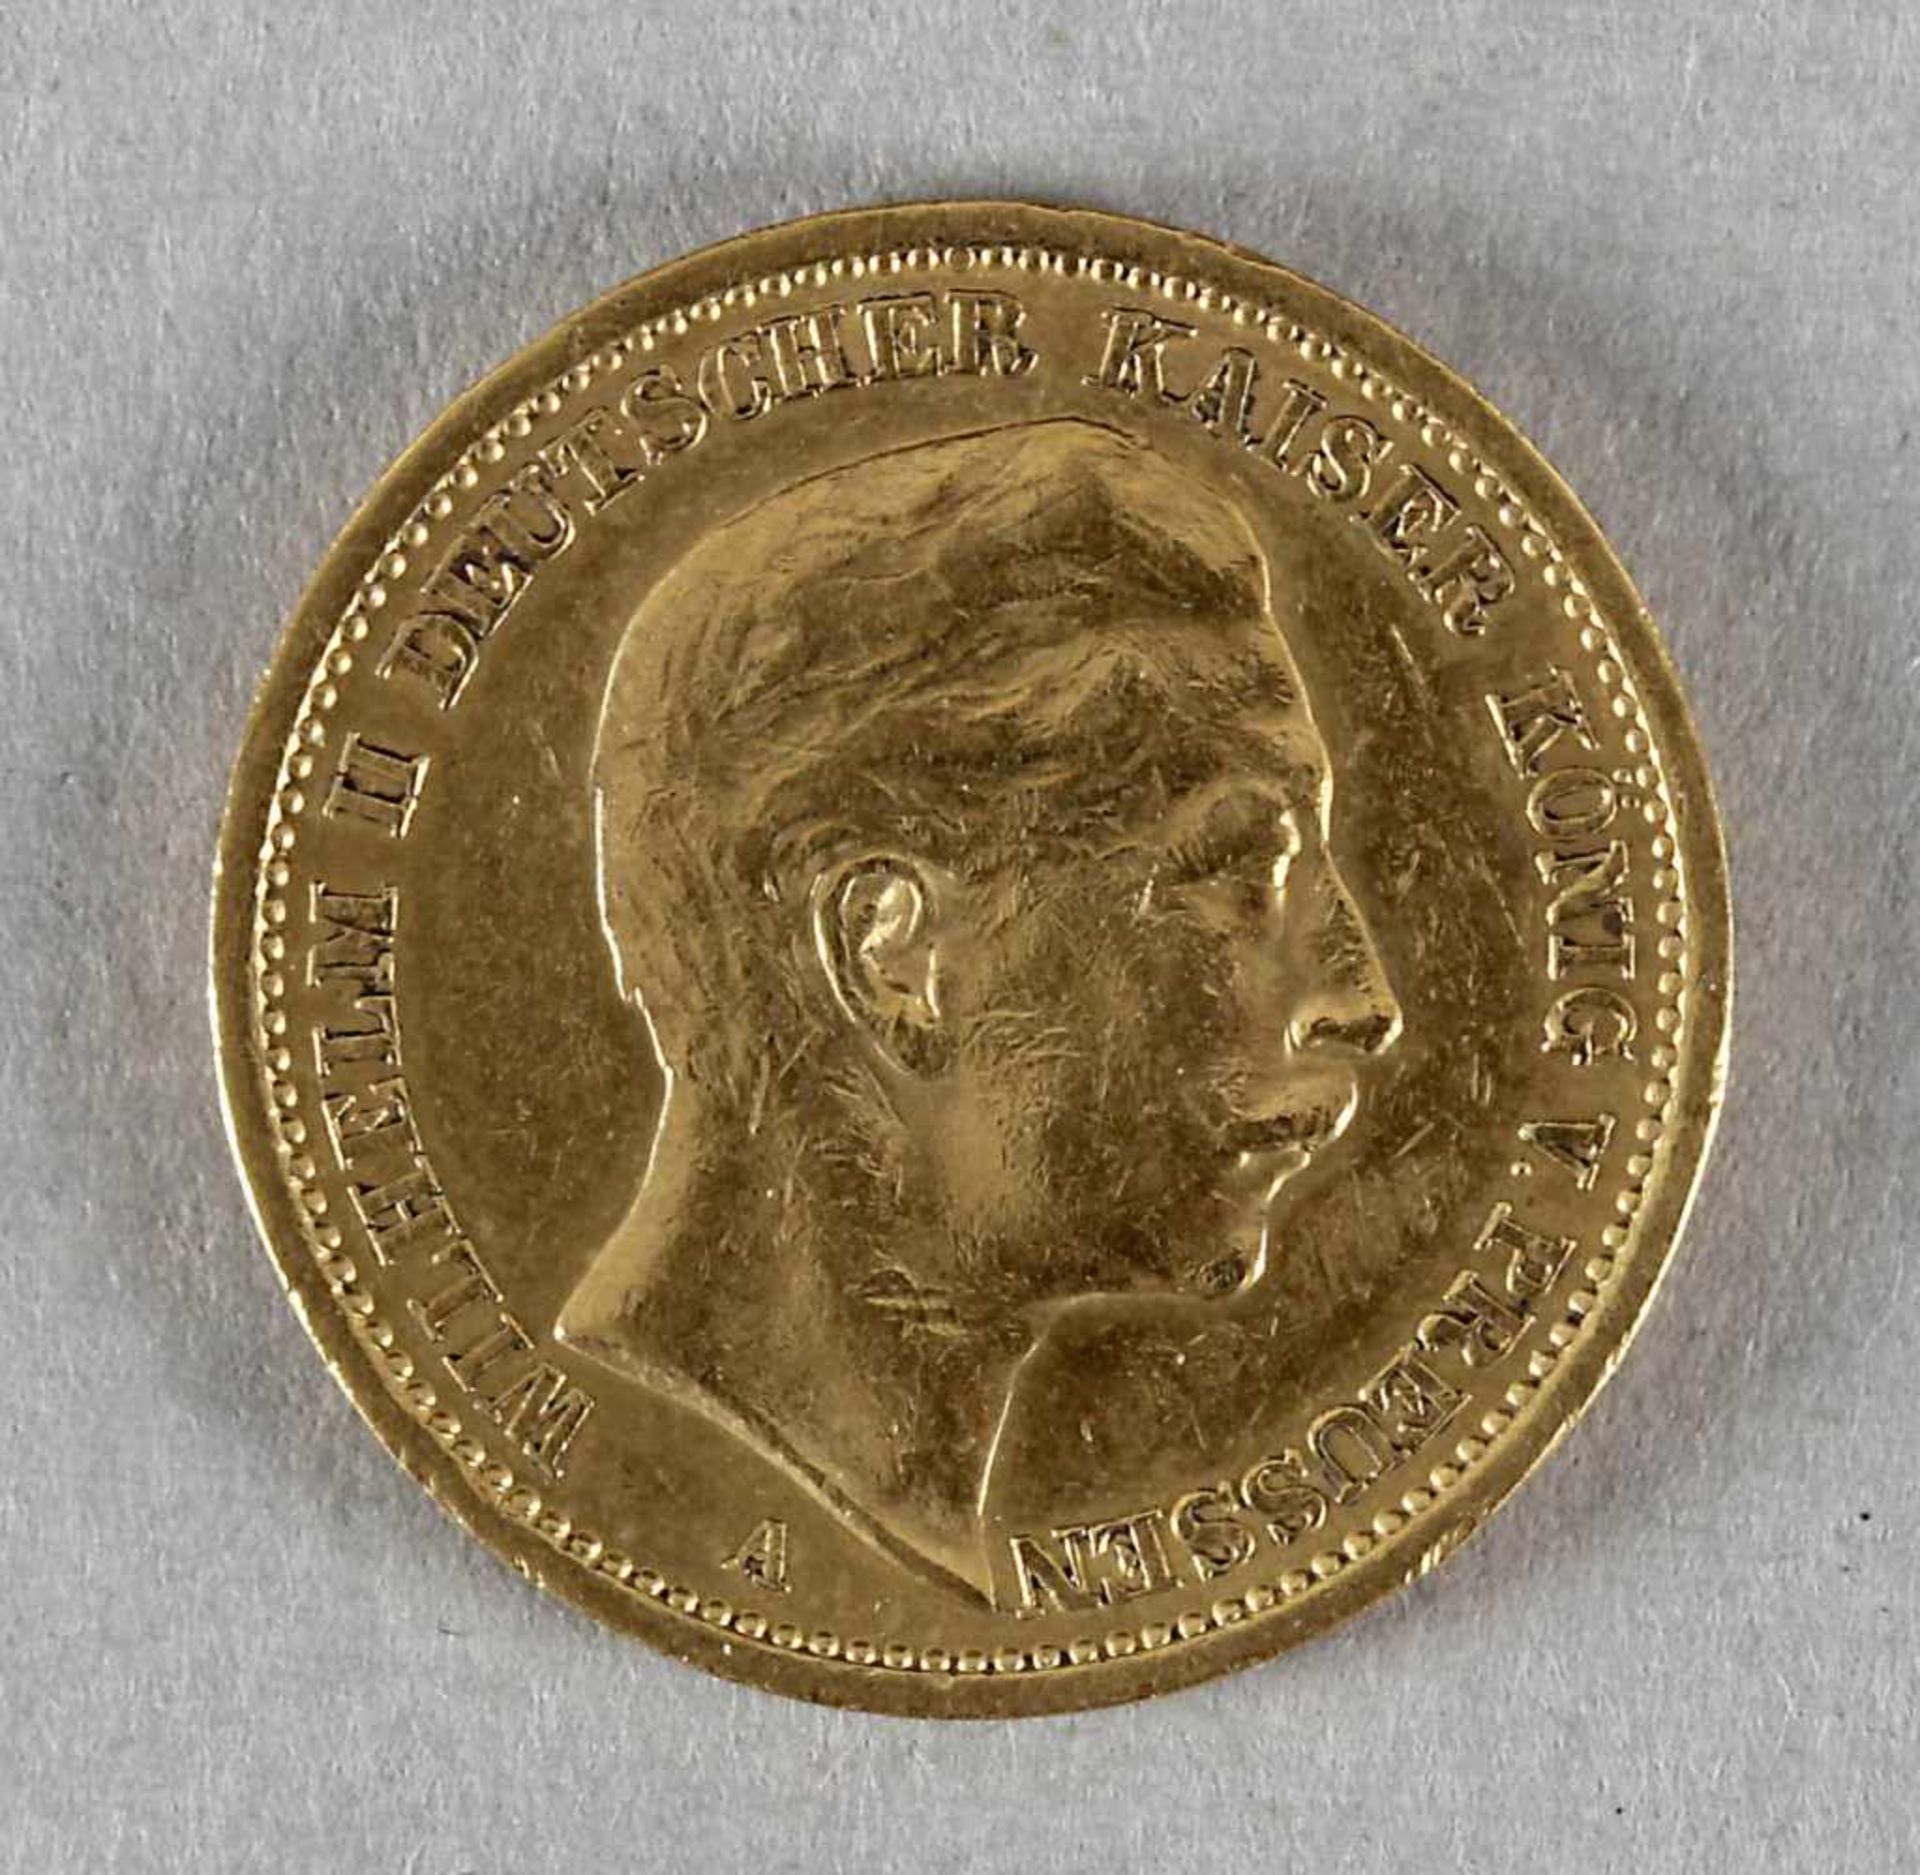 Goldmünze, 20 Mark, Wilhelm II. von Preußen, 1906 A